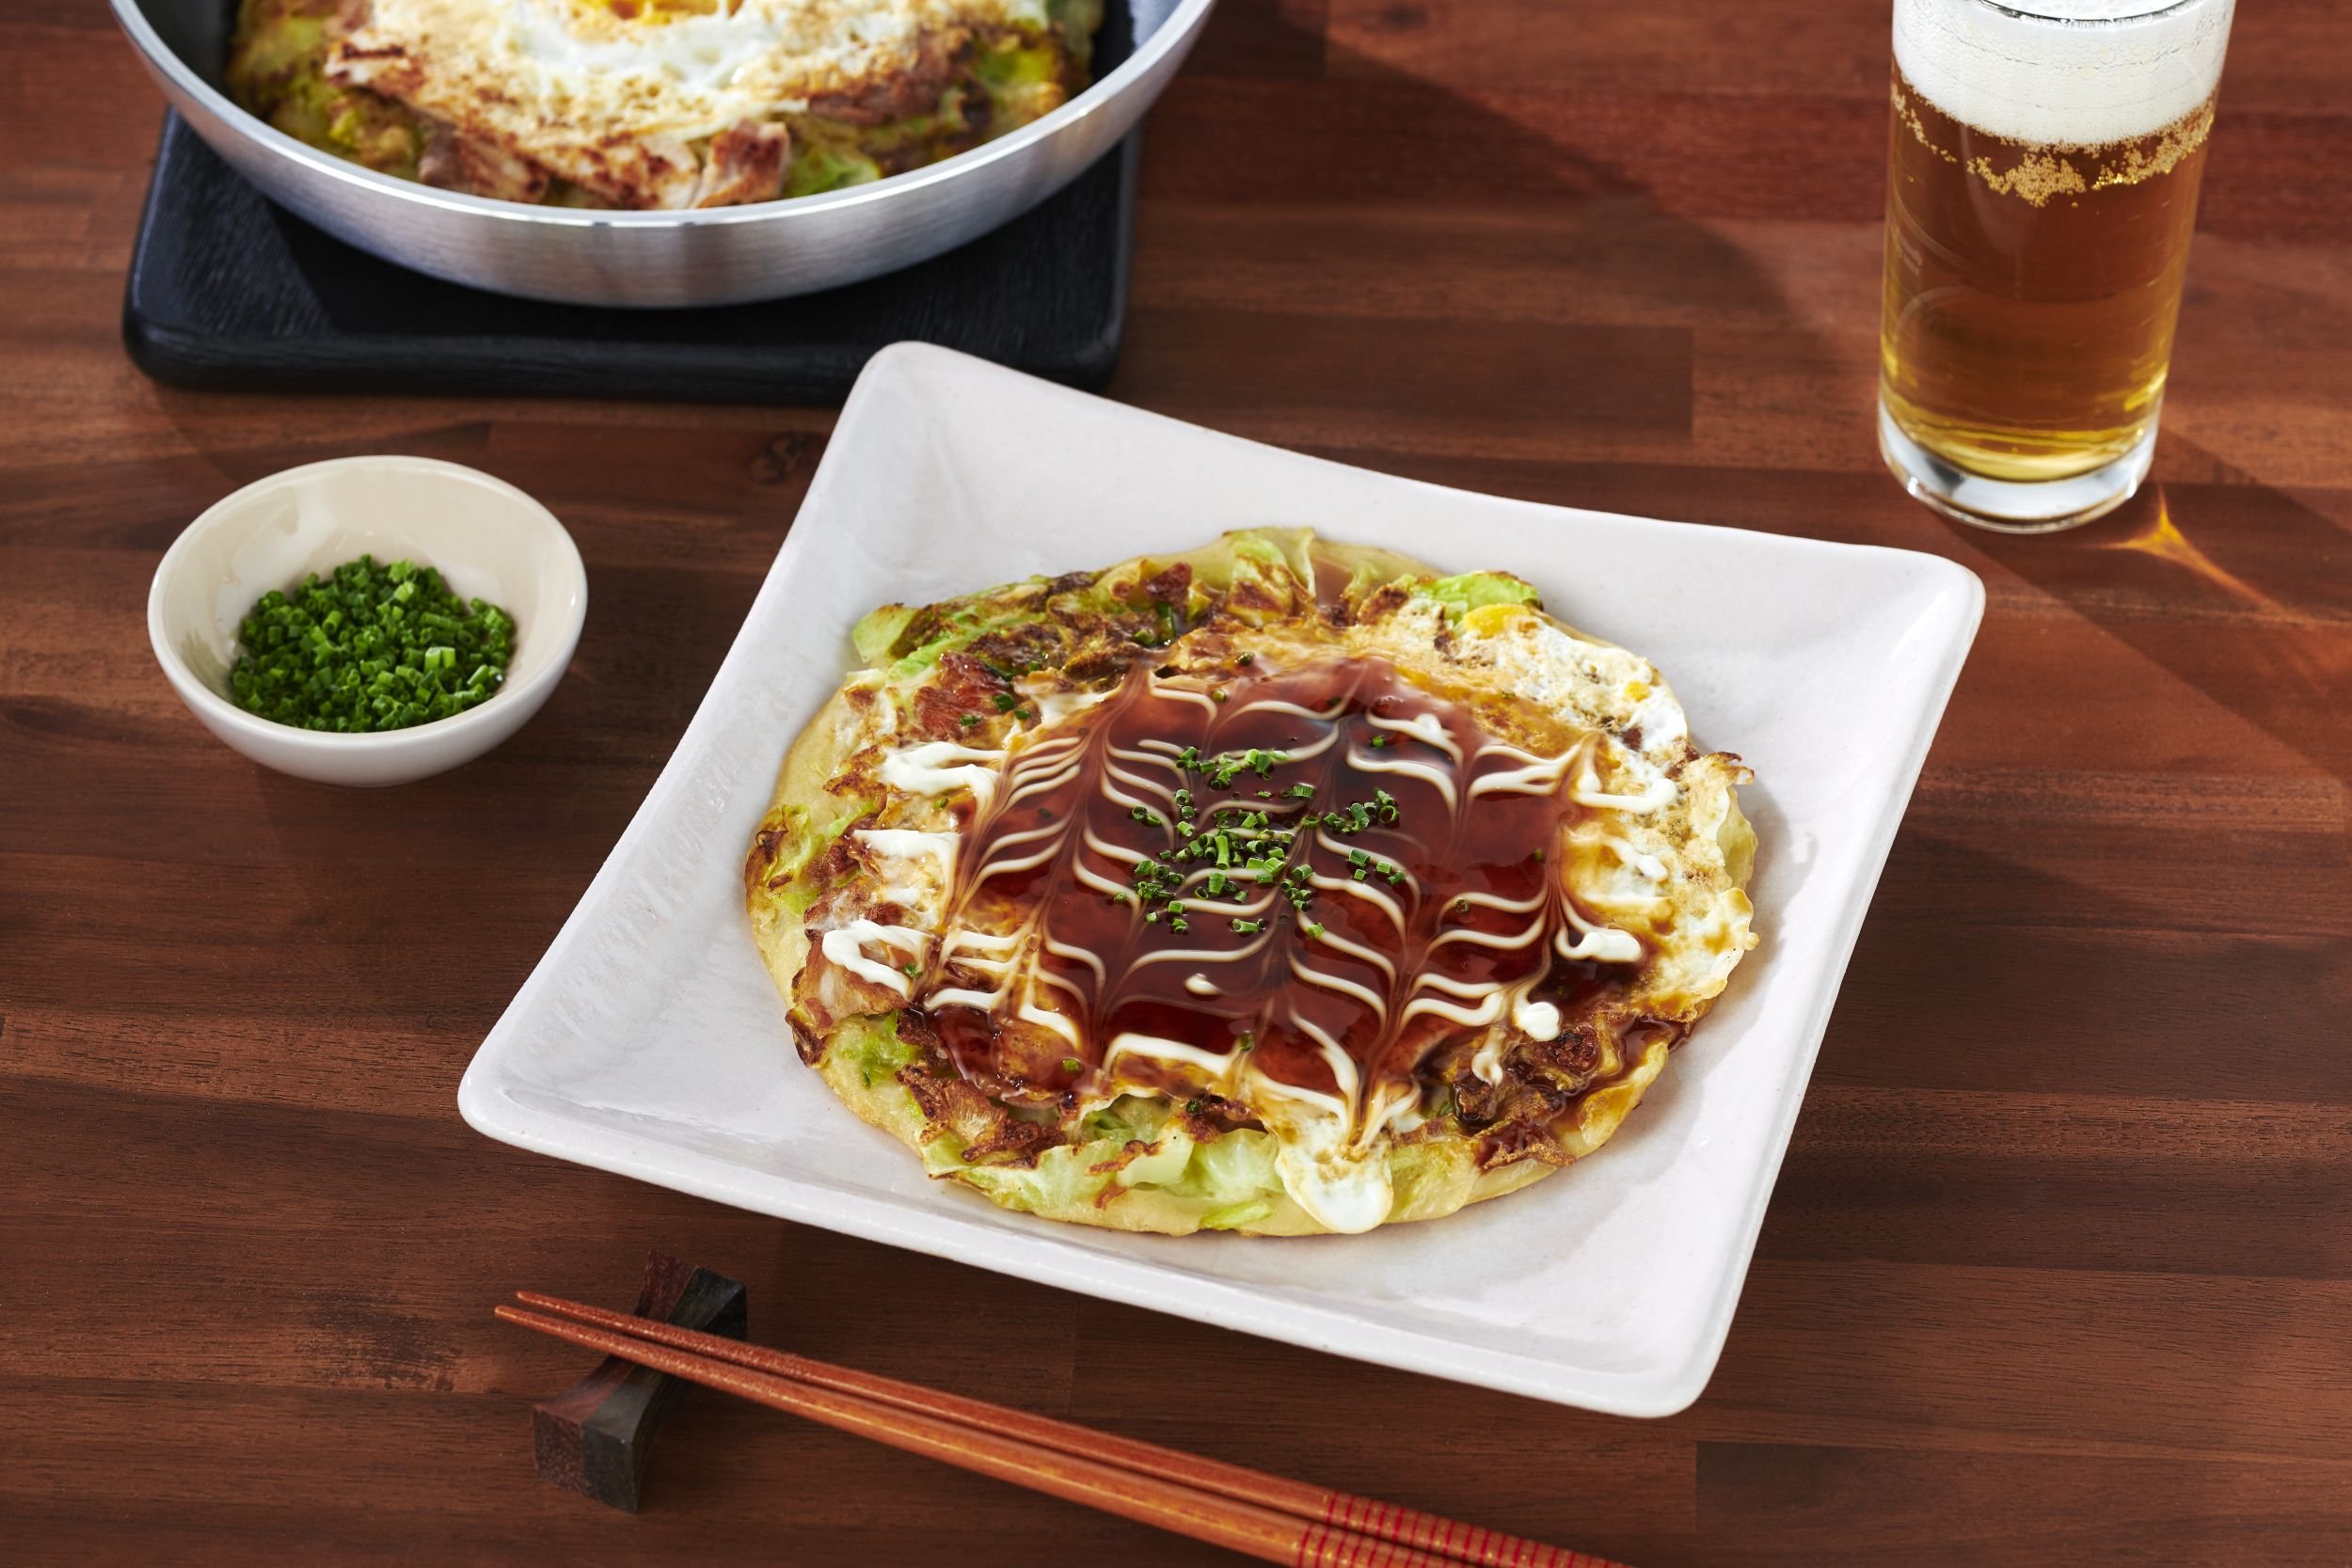 NANI COOKS! - Okonomiyaki Ready-to-Make Recipe with a Fun Twist! — NANI?!  なに - Singapore's Japanese Food & Lifestyle Guide